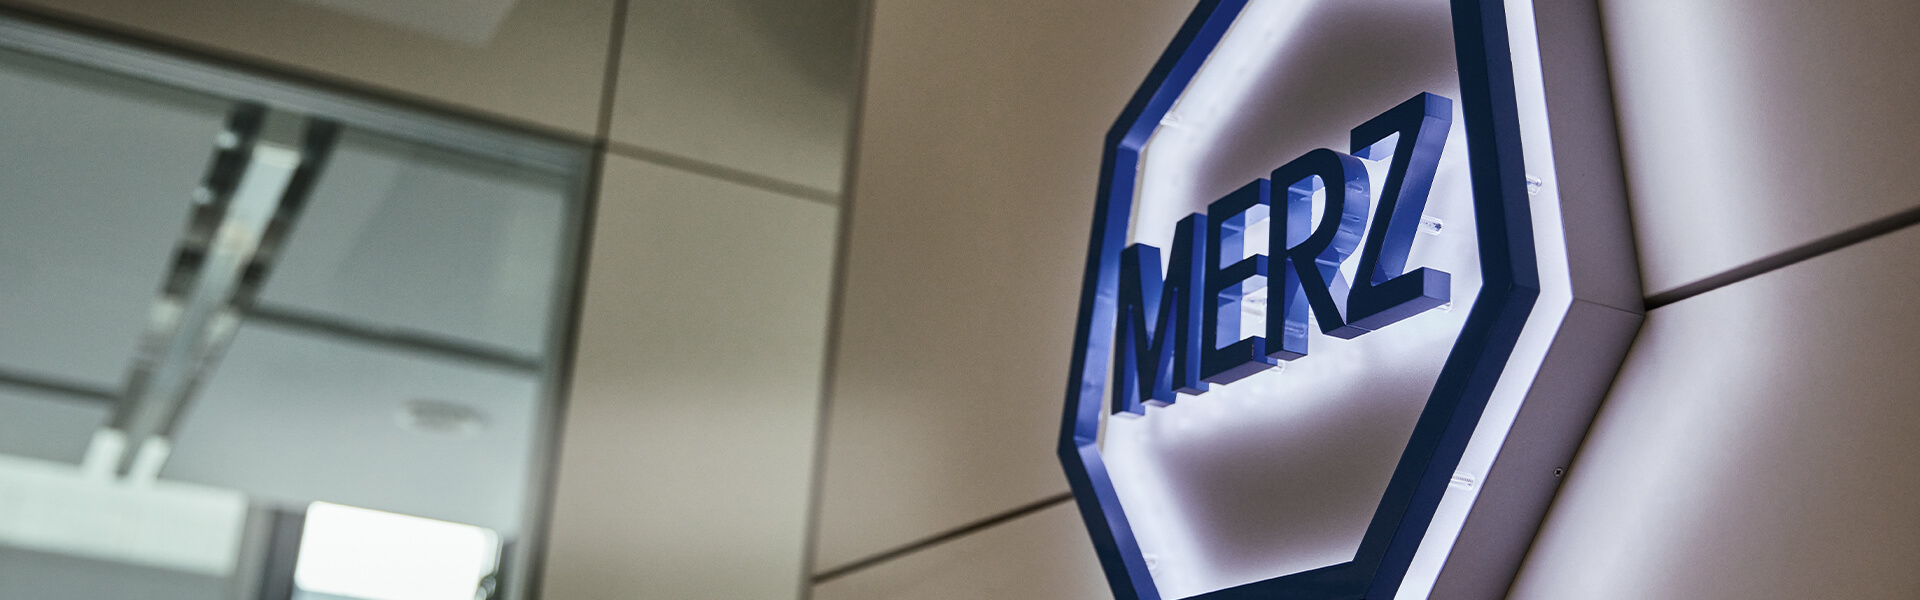 Merz - Het verhaal van een succesvol bedrijf